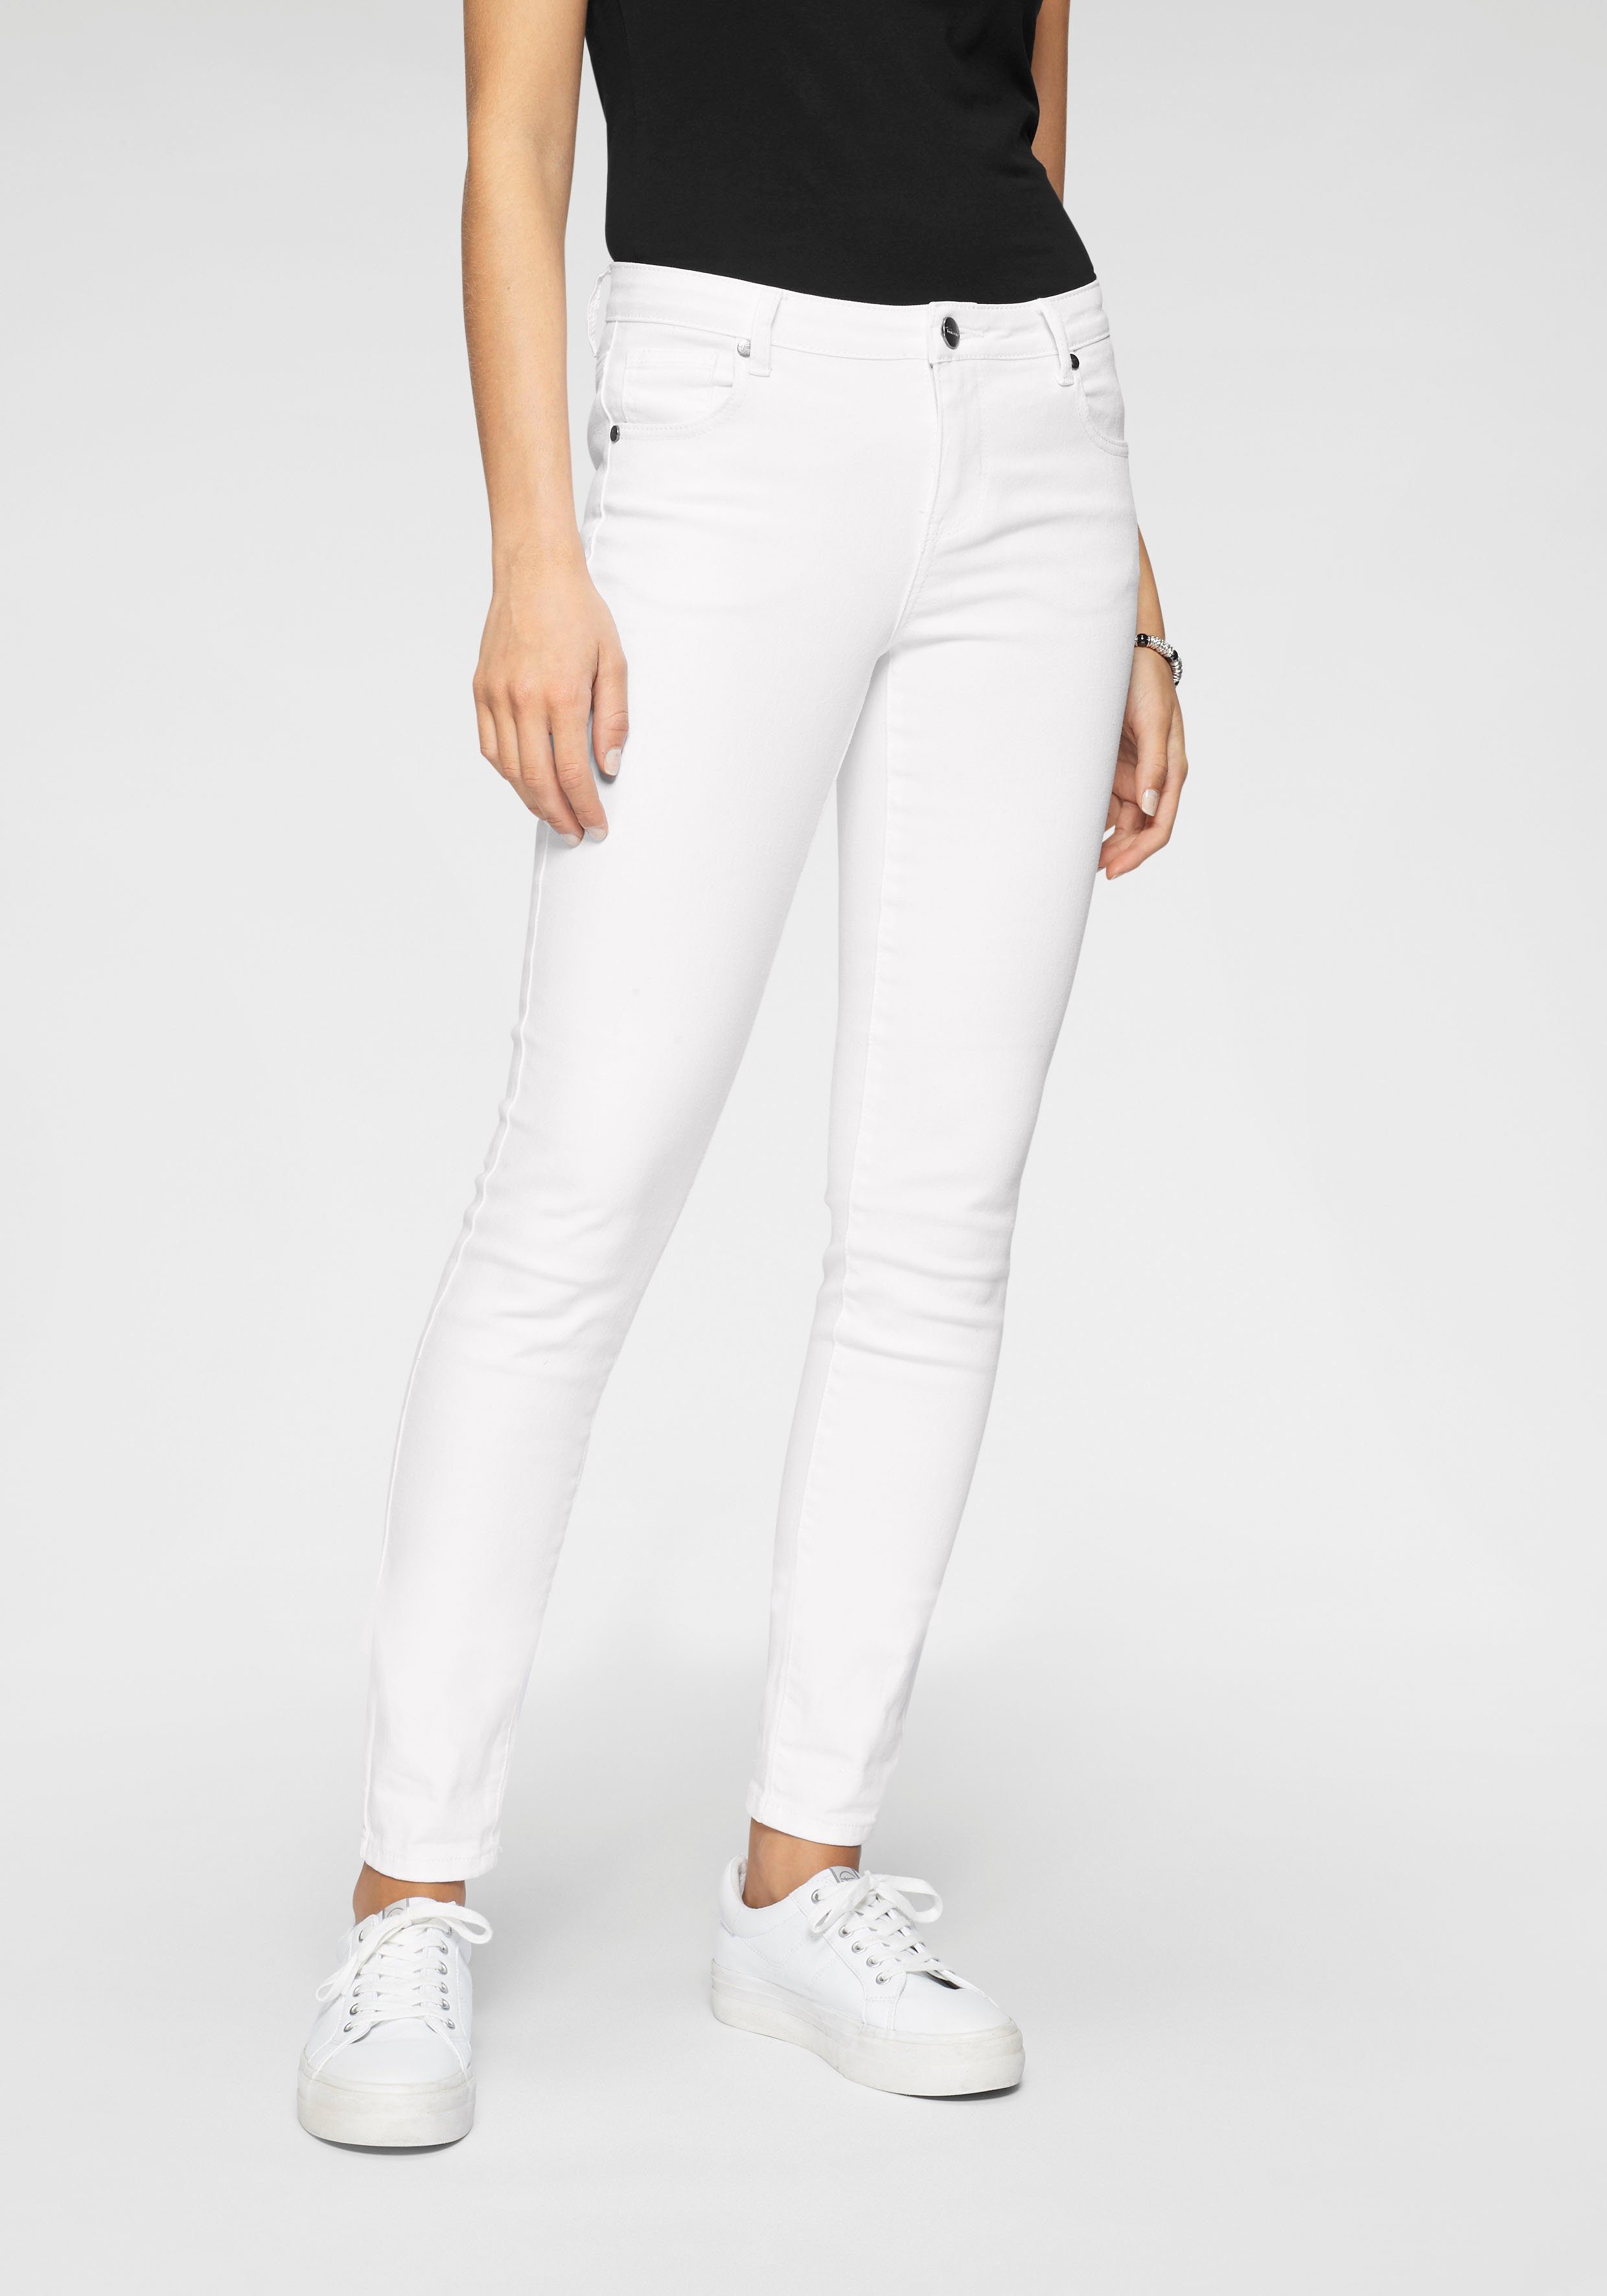 Jeans Größe 36 online kaufen | OTTO